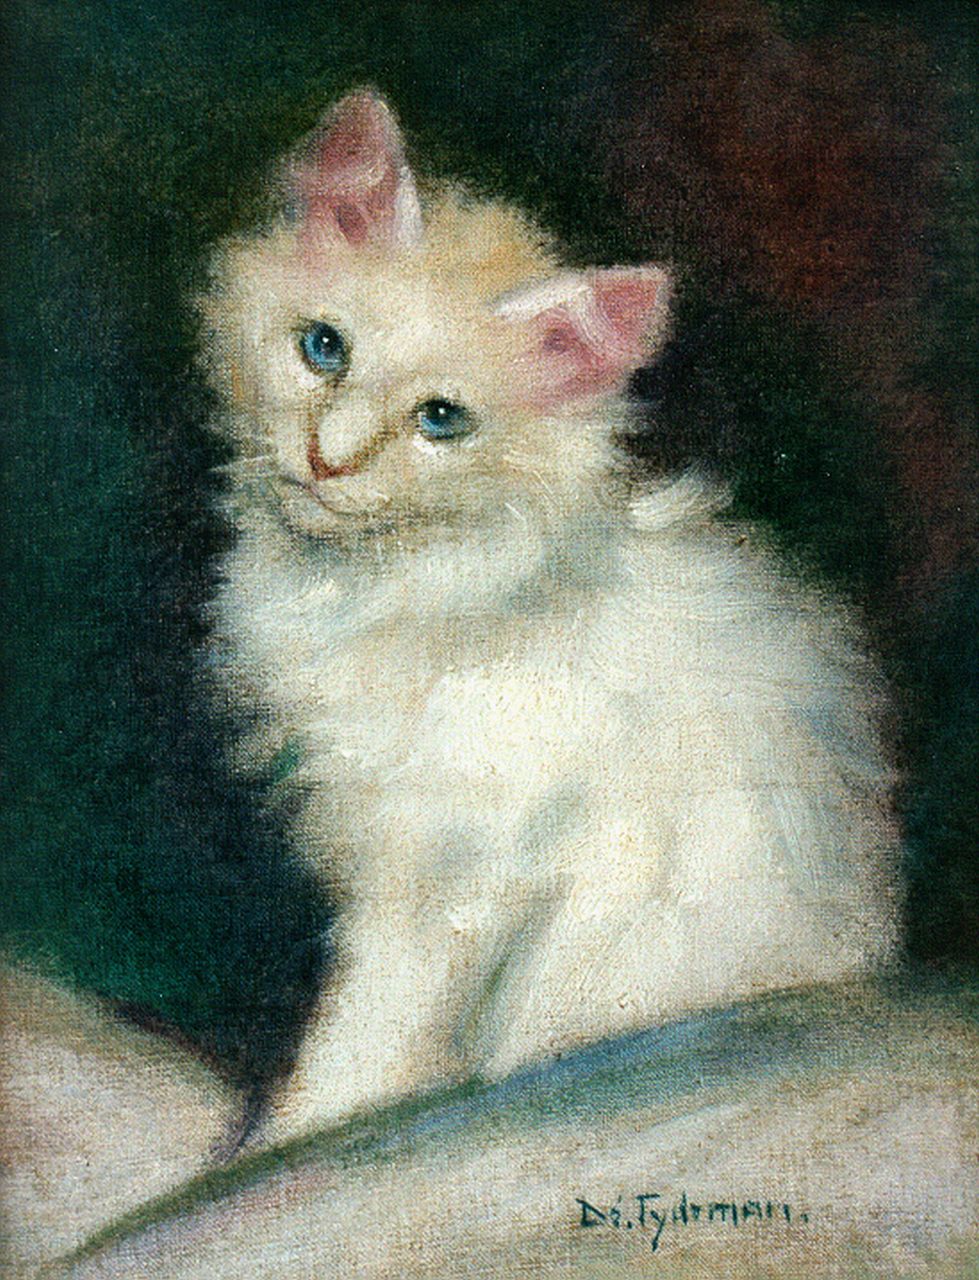 Tijdeman E.M.  | Ernestine Marie 'Dé' Tijdeman, White kitten, Öl auf Leinwand auf Holz 26,3 x 19,8 cm, signed l.r.